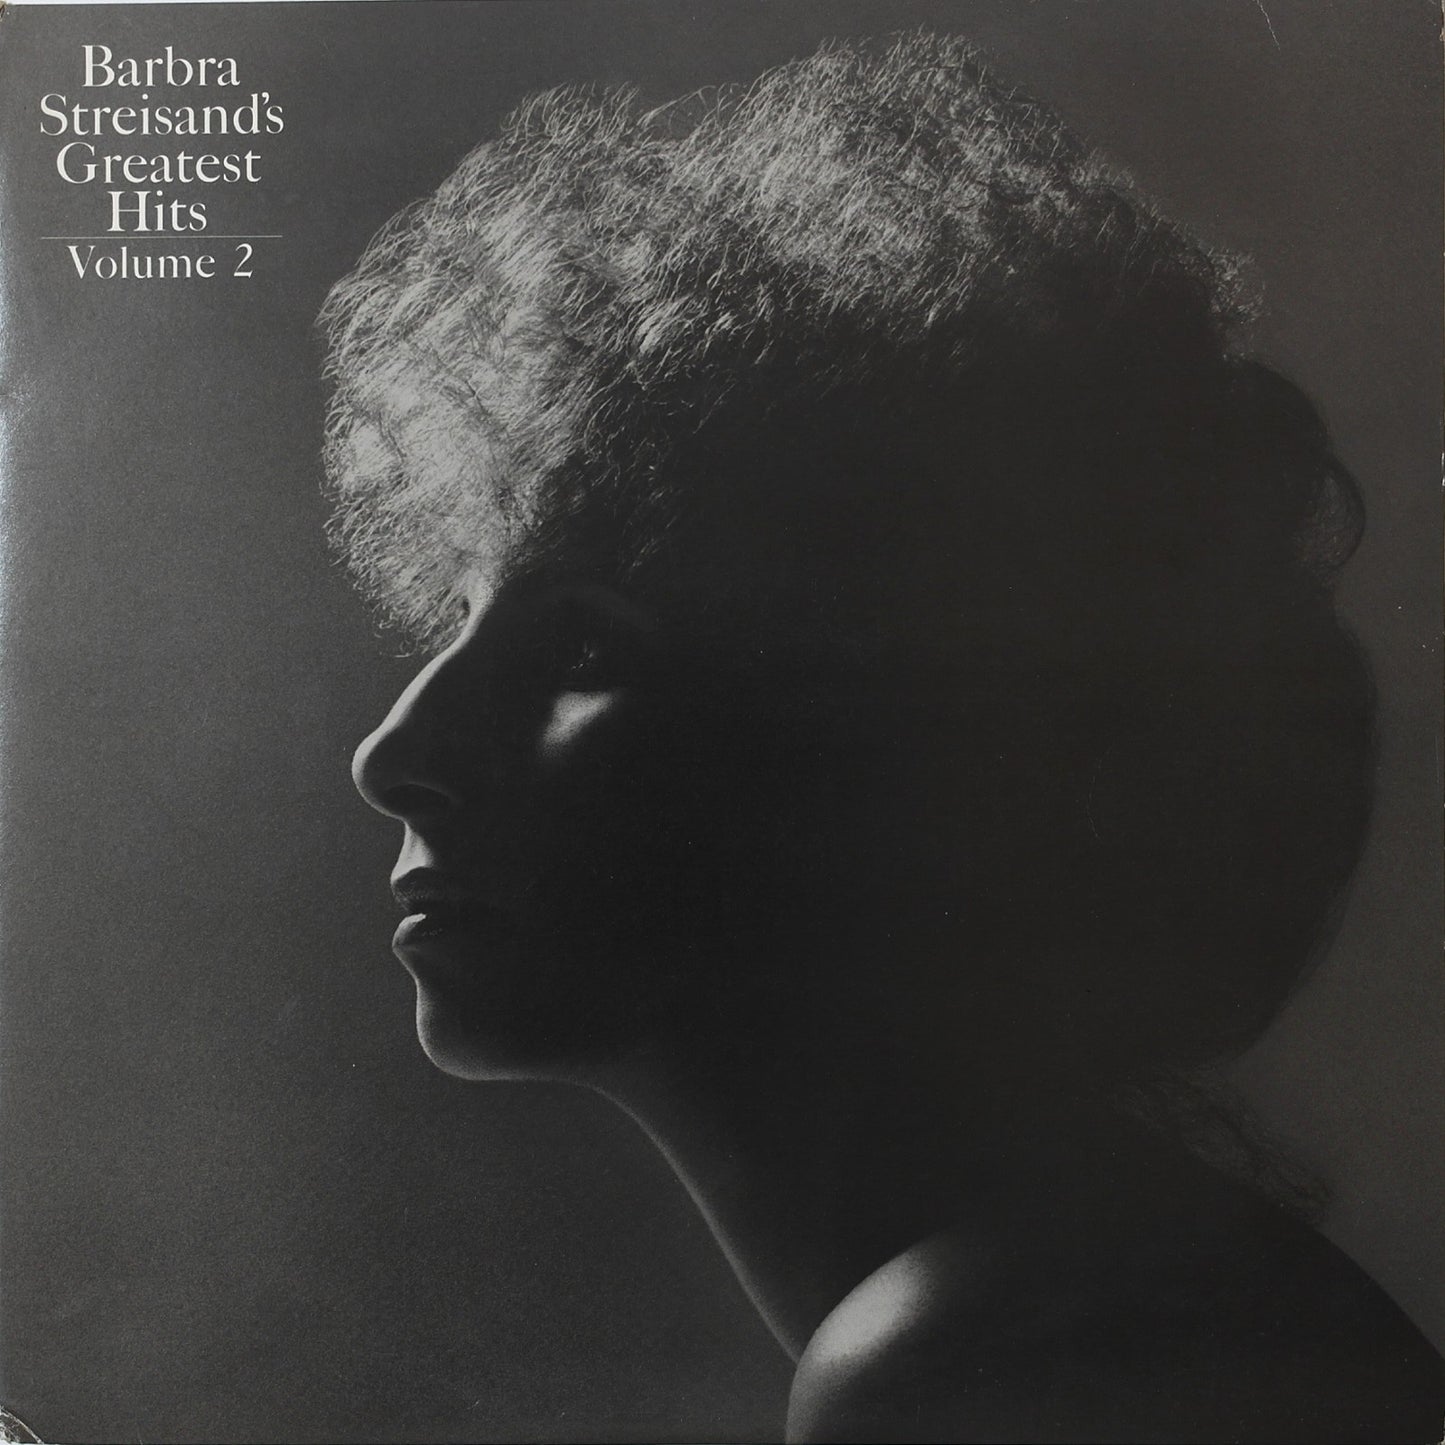 BARBRA STREISAND - Barbra Streisand's Greatest Hits - Volume 2